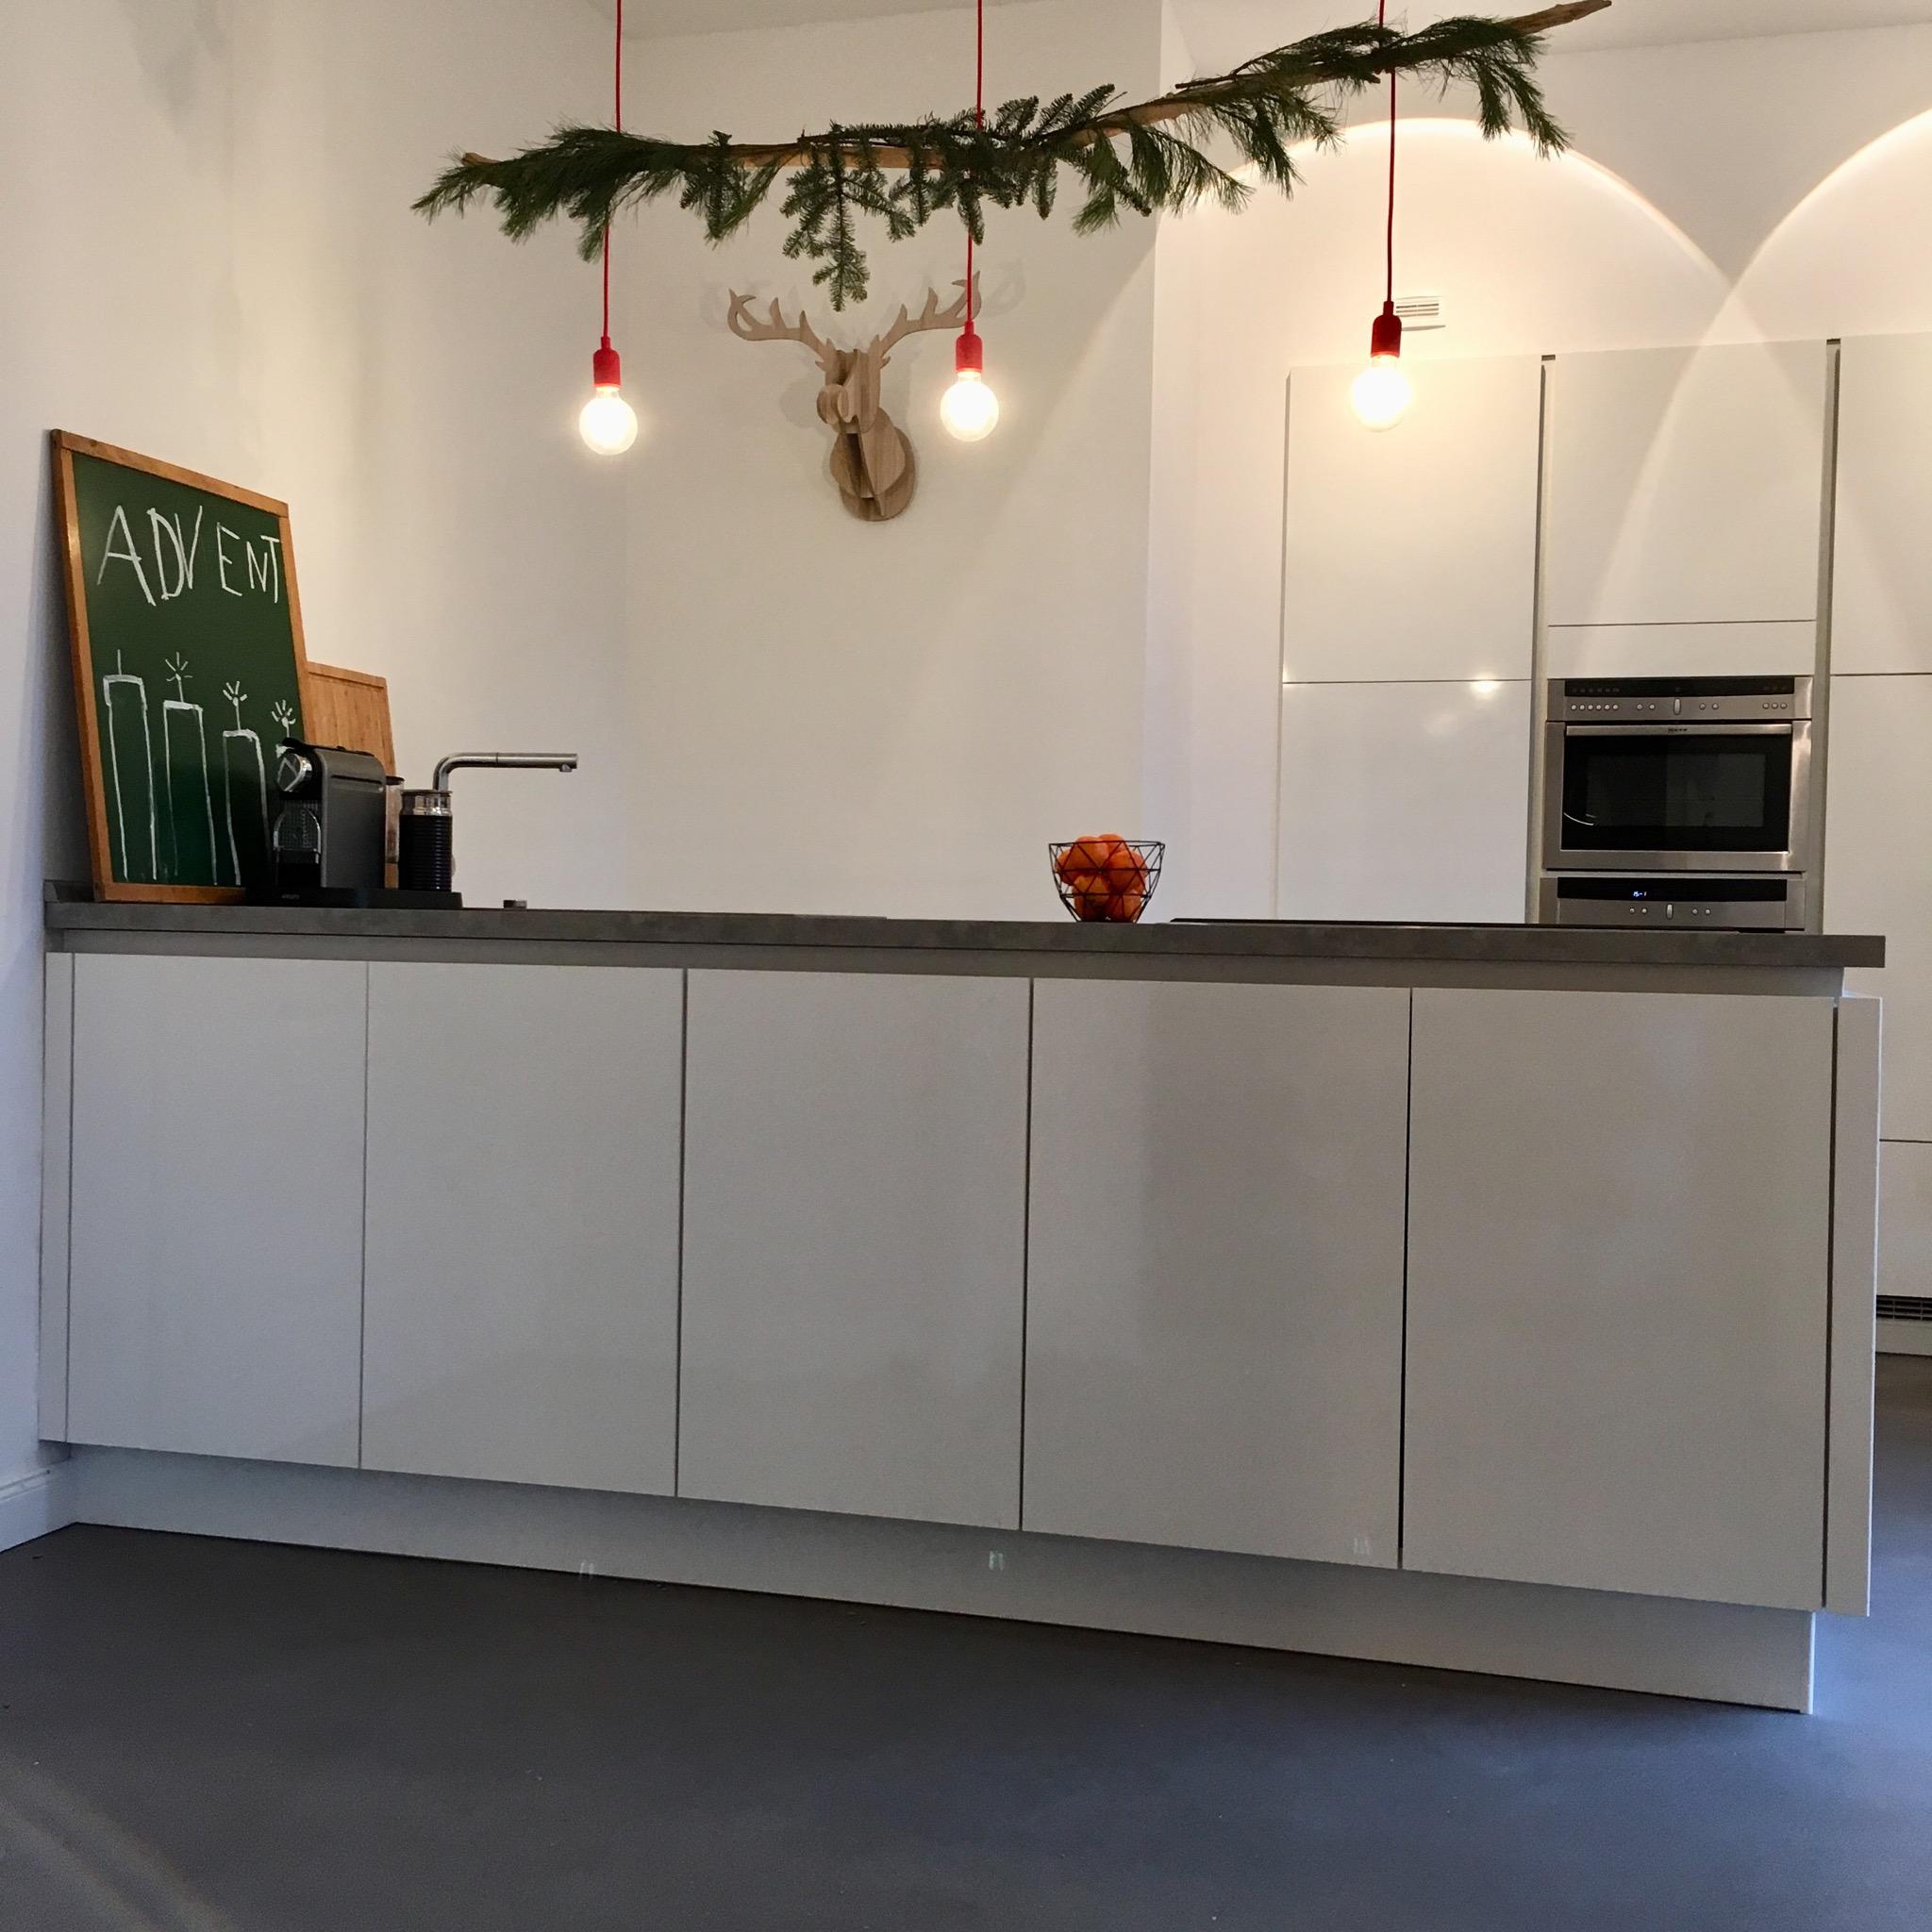 #küche #weiß #minimalistisch #diy #diylampe #lampe #leuchte #skandinavisch #beton